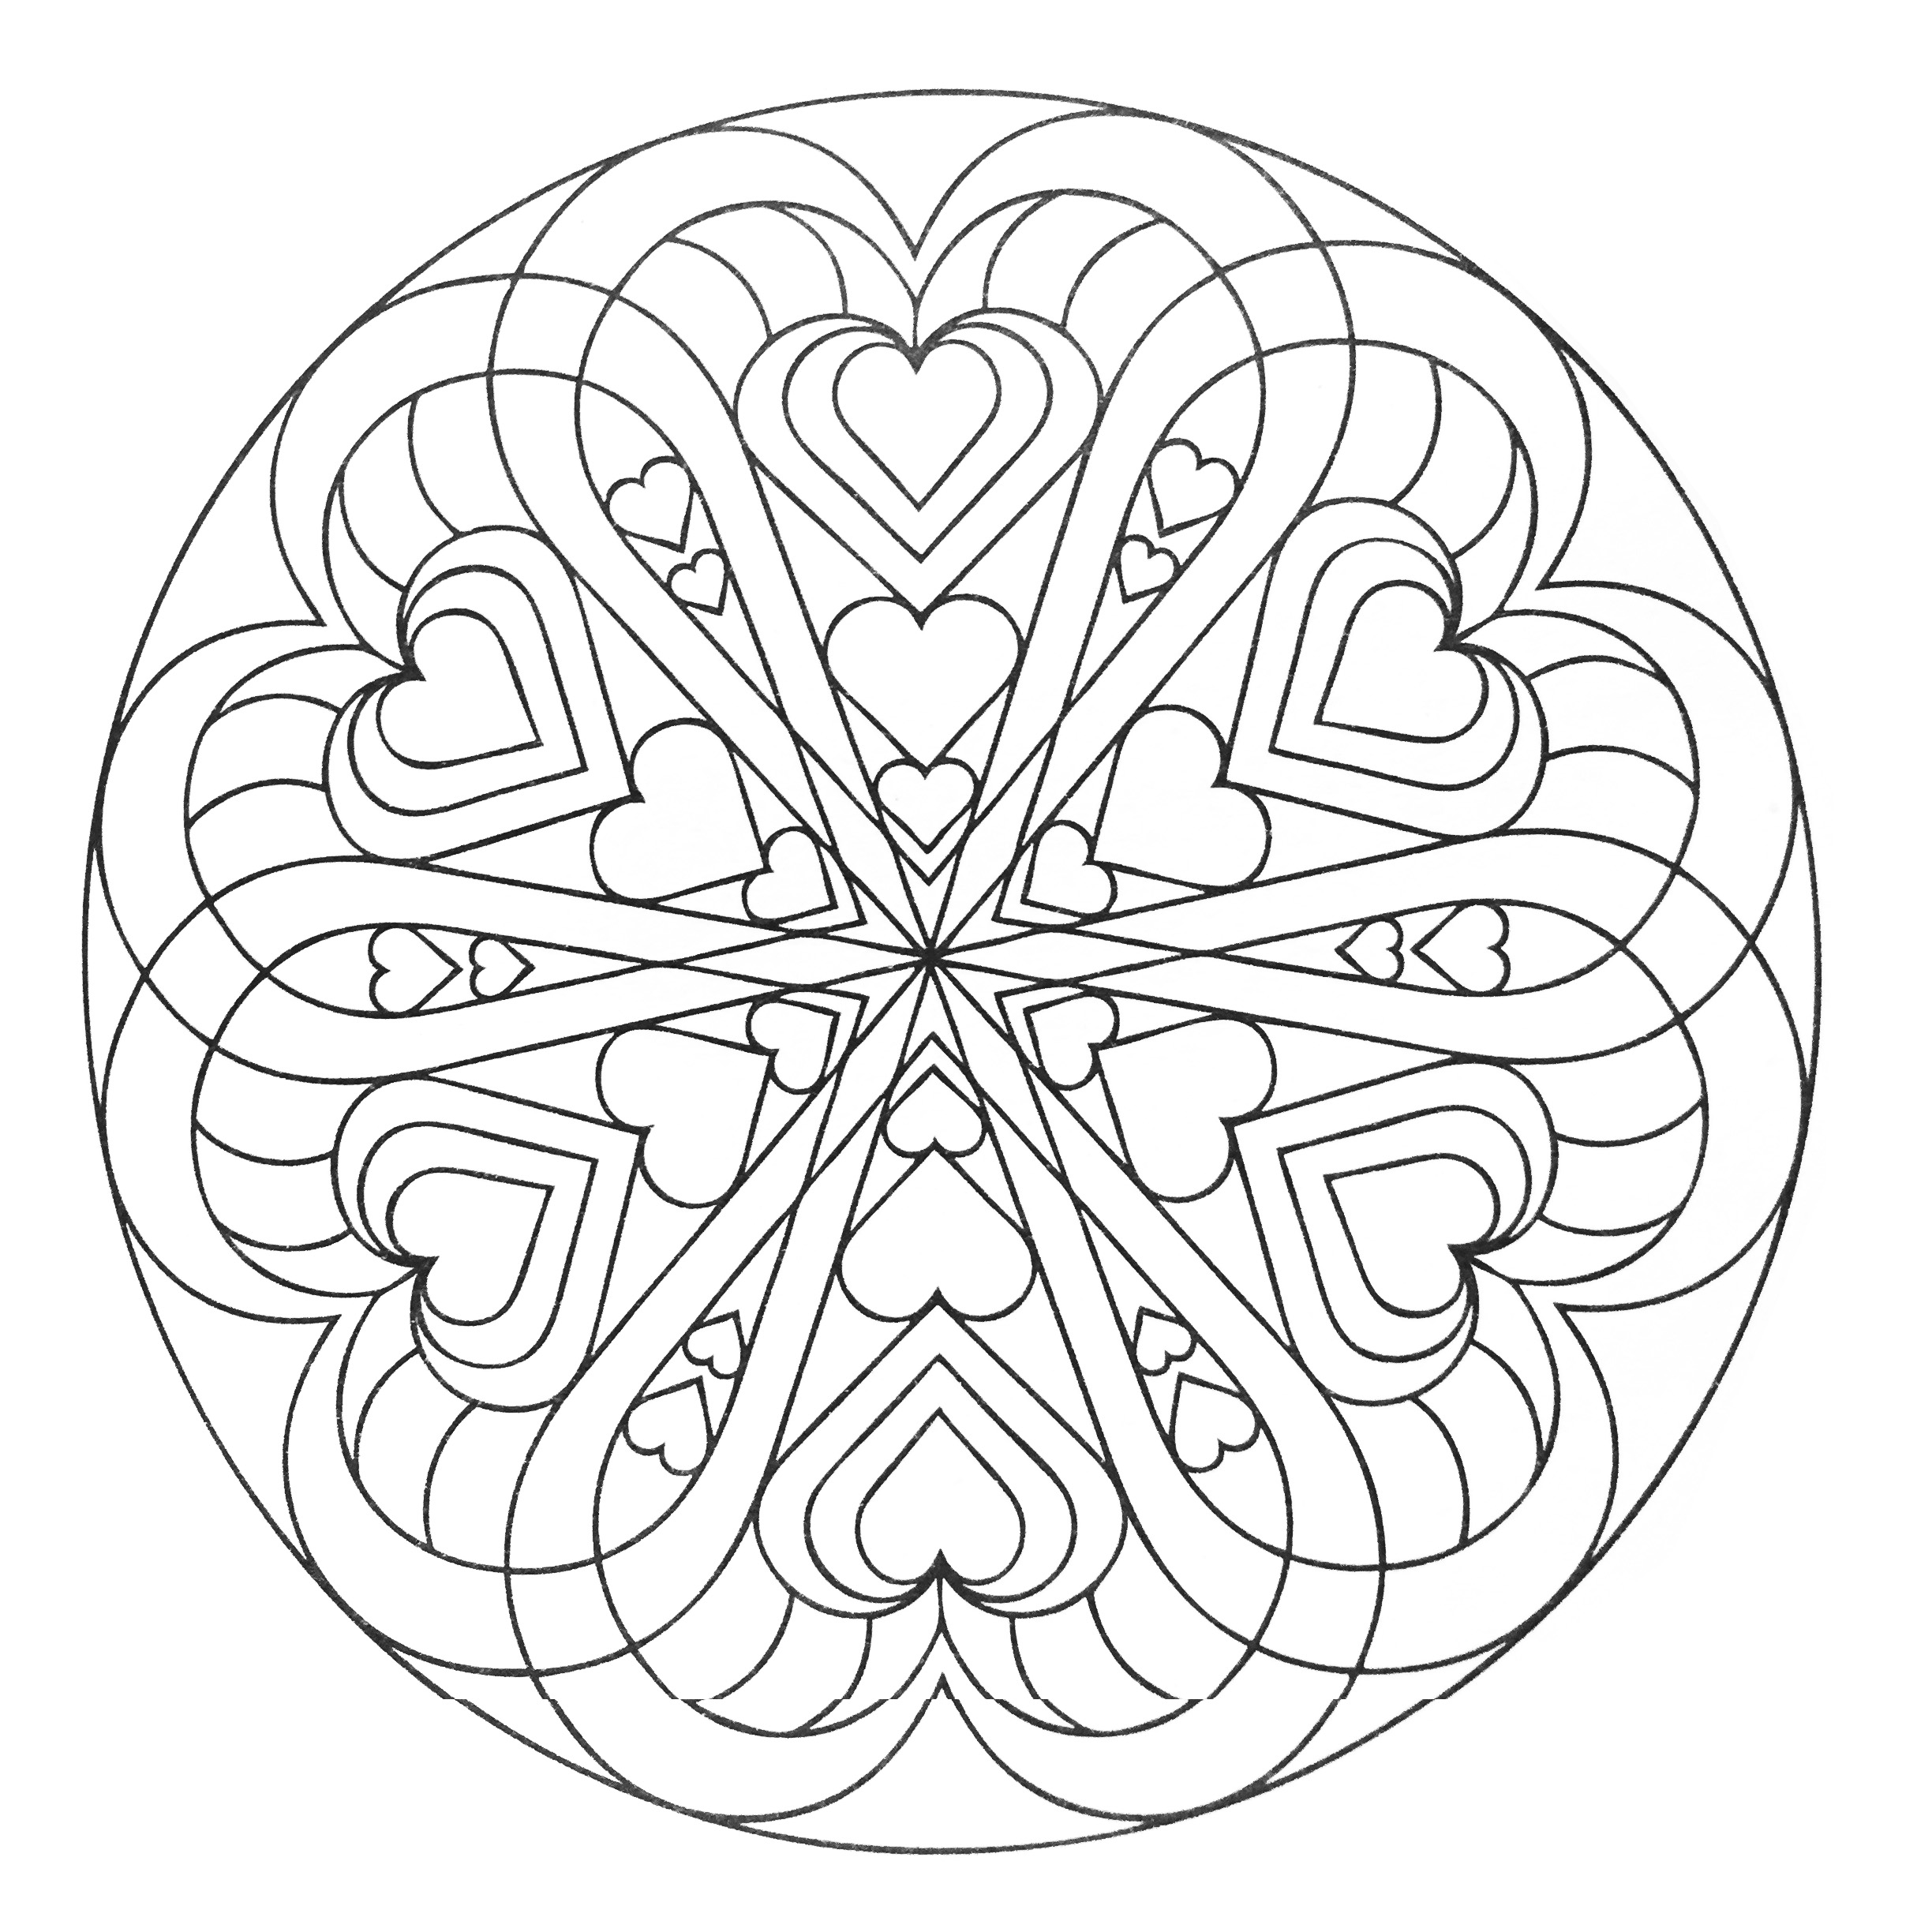 Desenhos para colorir de Mandalas para imprimir e colorir - Mandalas -  Coloring Pages for Adults